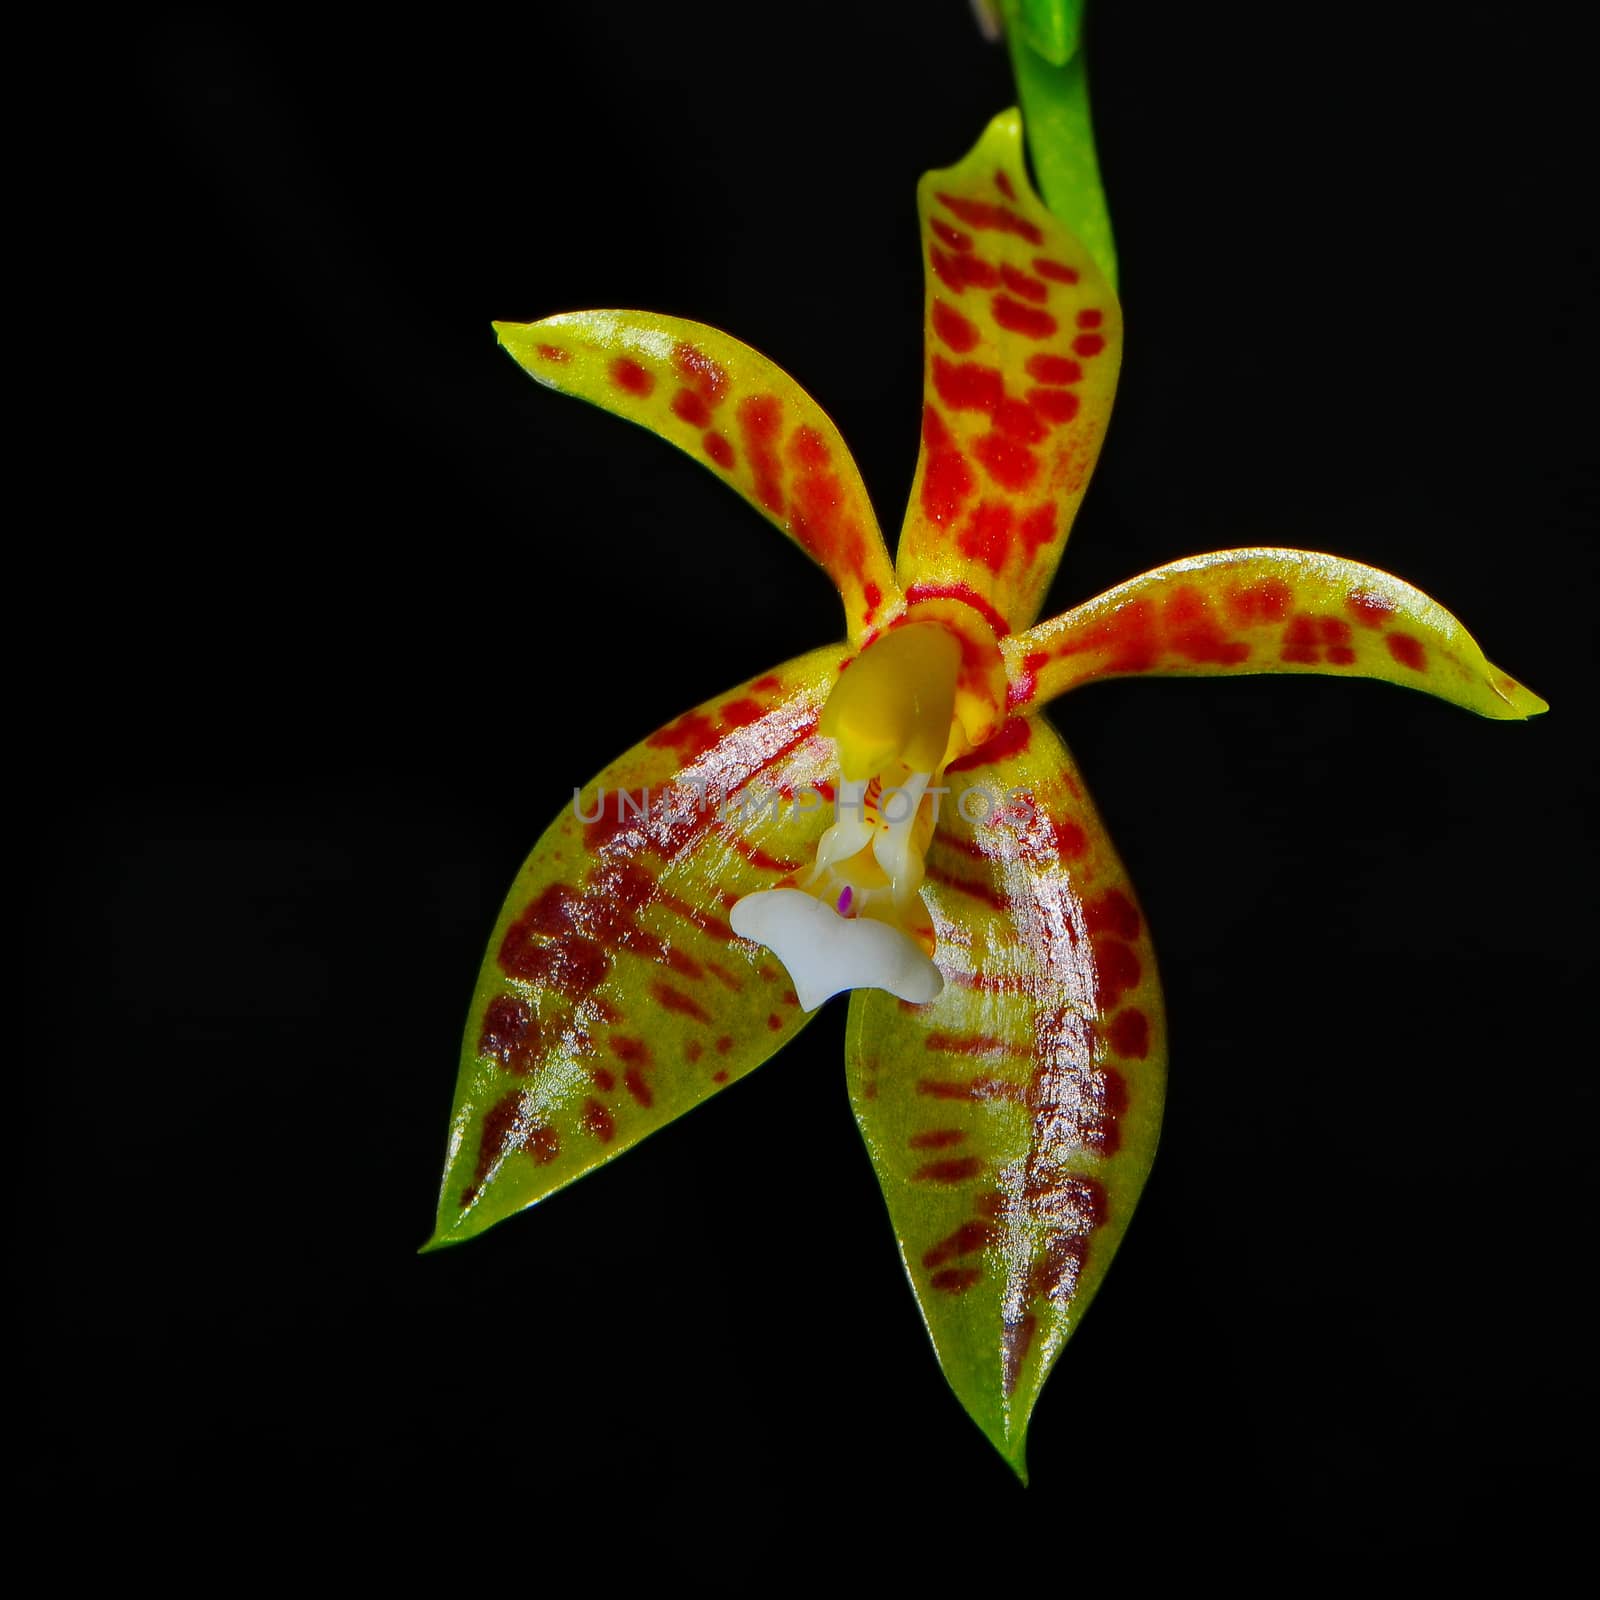 Phalaenopsis cornu-cervi by panuruangjan